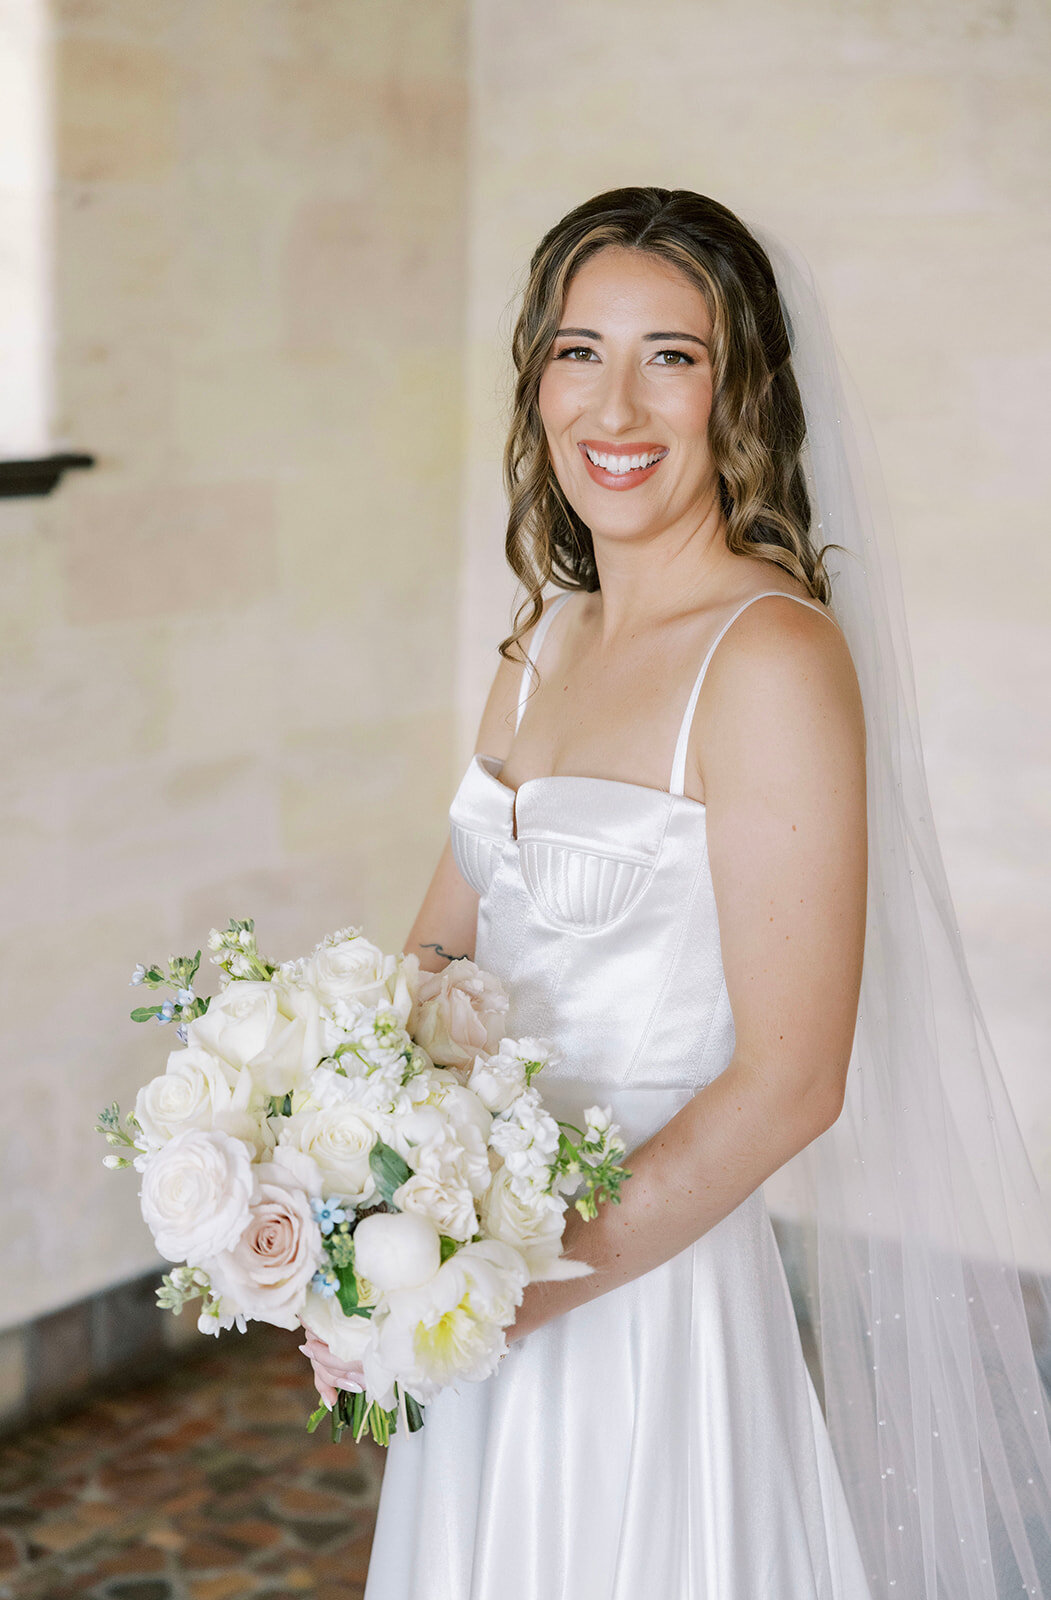 CORNELIA ZAISS PHOTOGRAPHY COURTNEY + ANDREW WEDDING 0157_websize